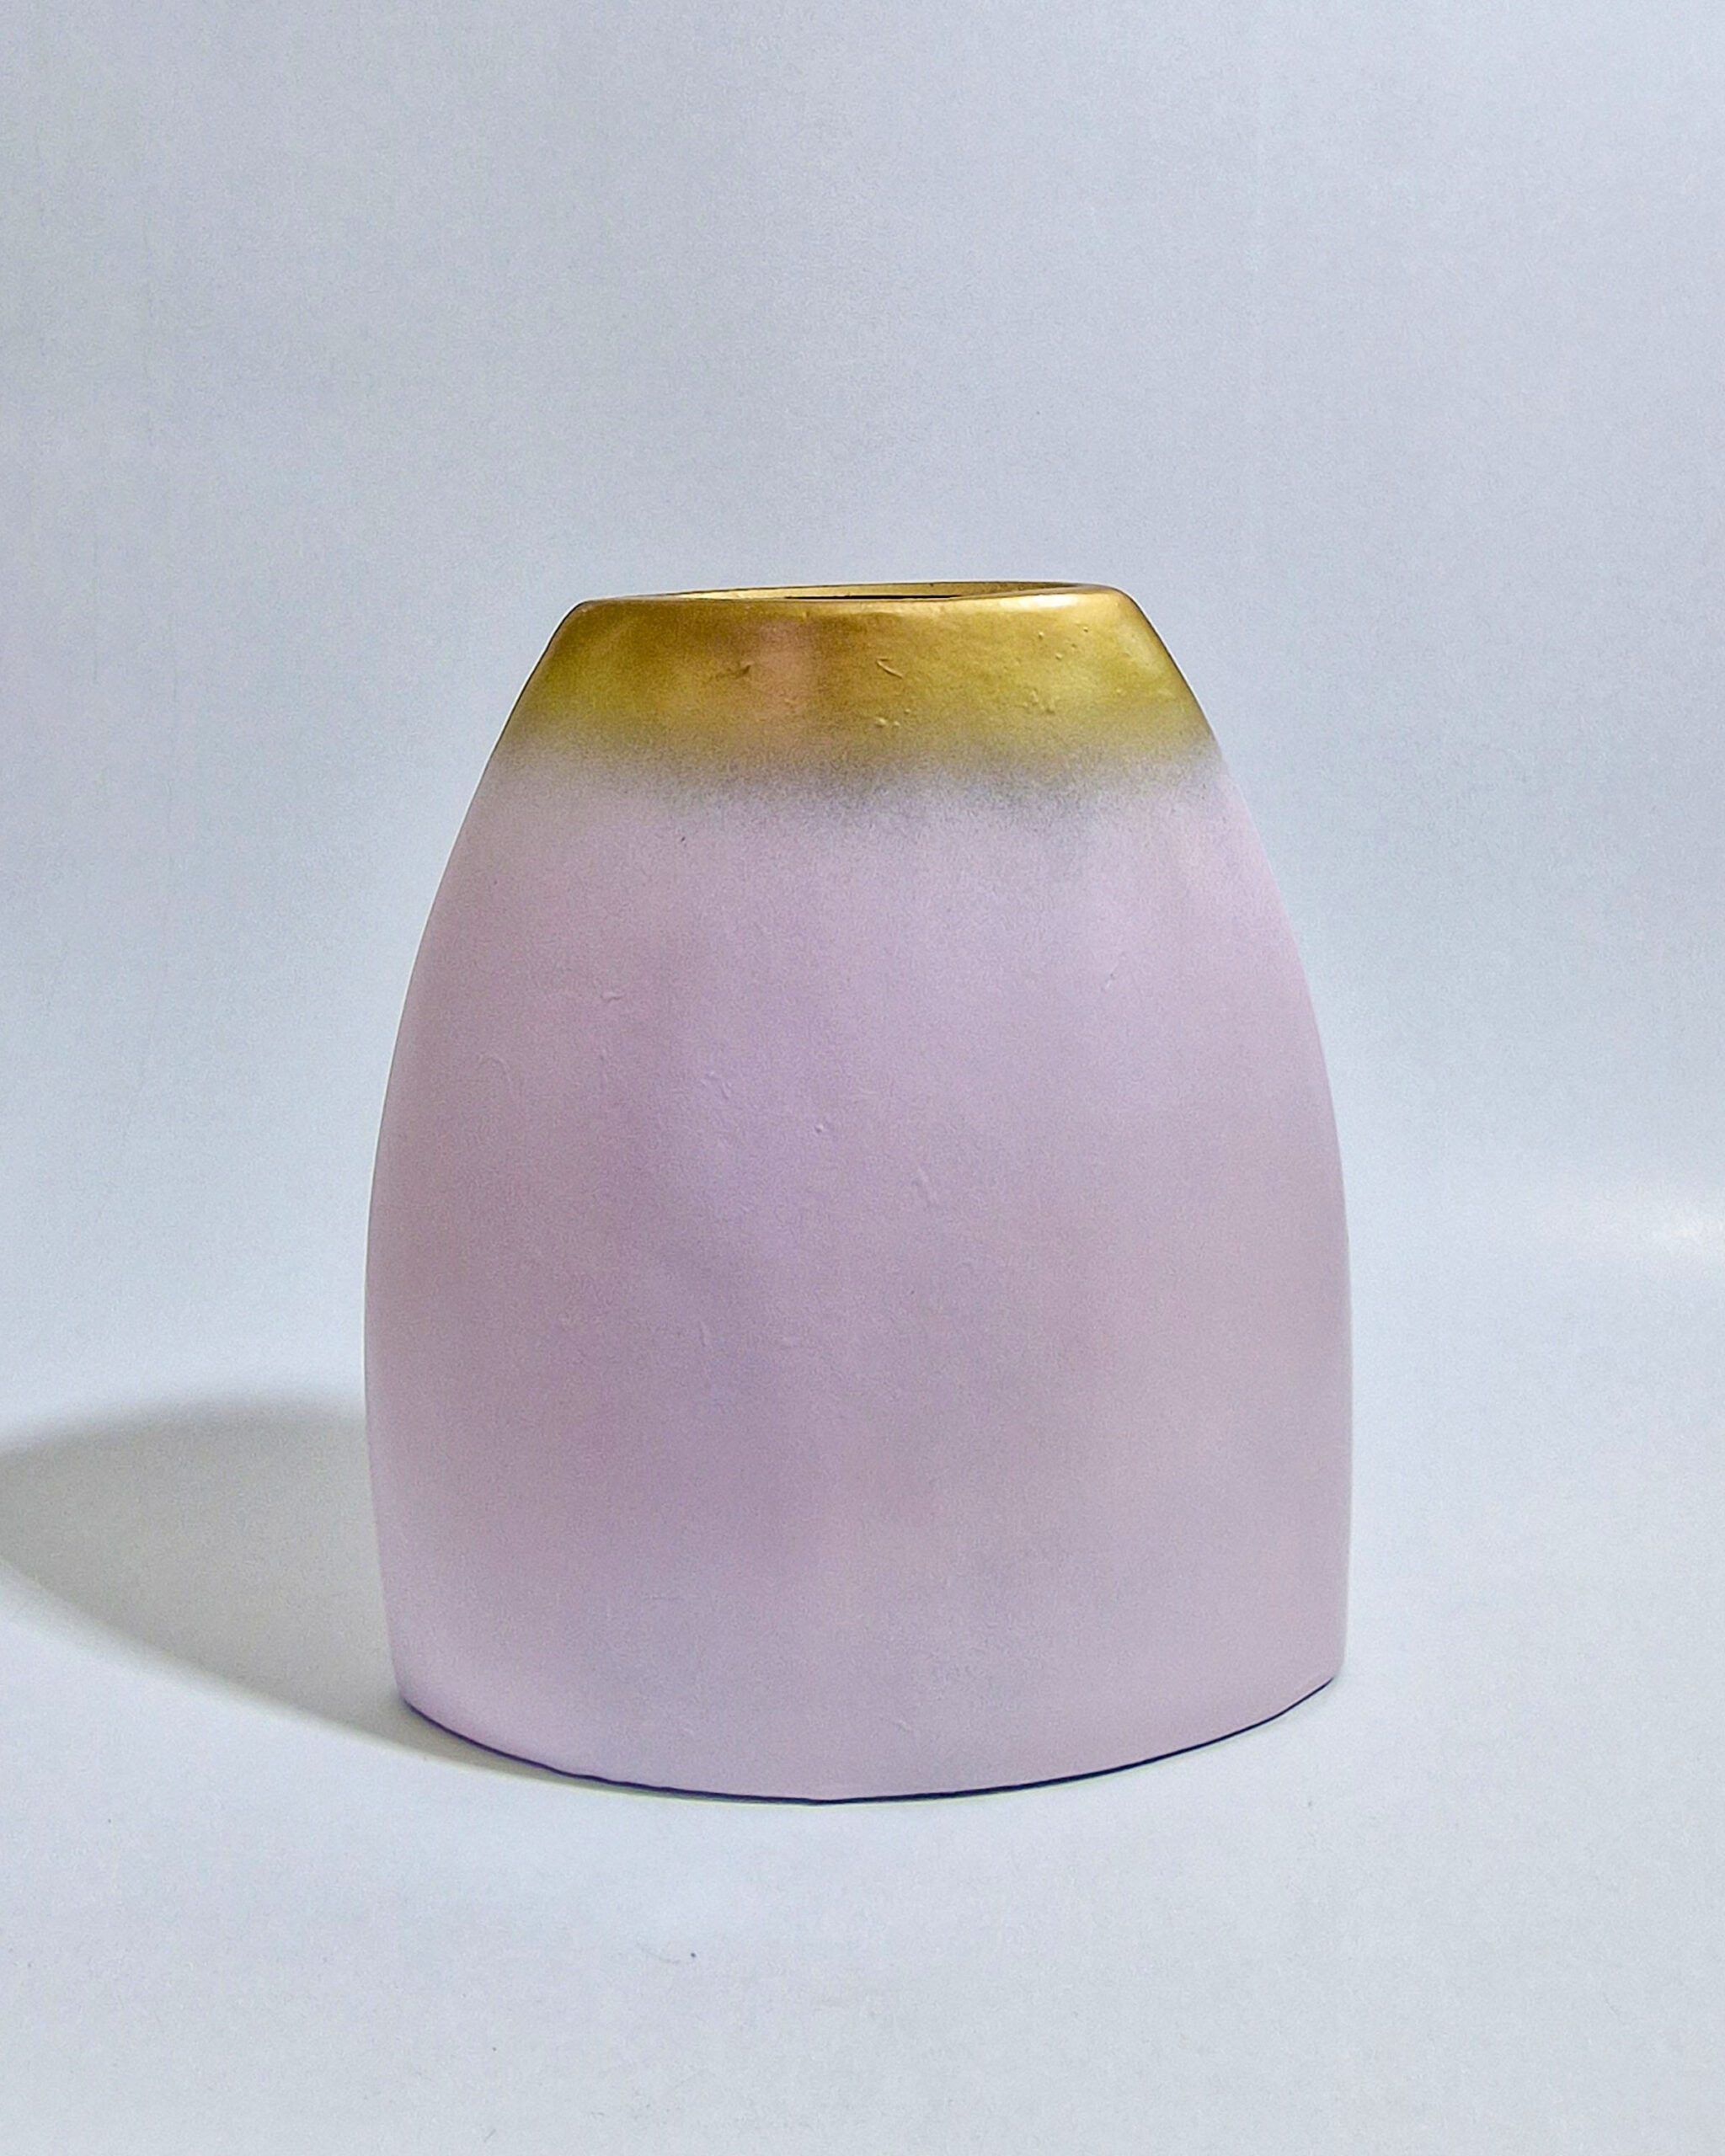 Pink ceramic vase with gold details